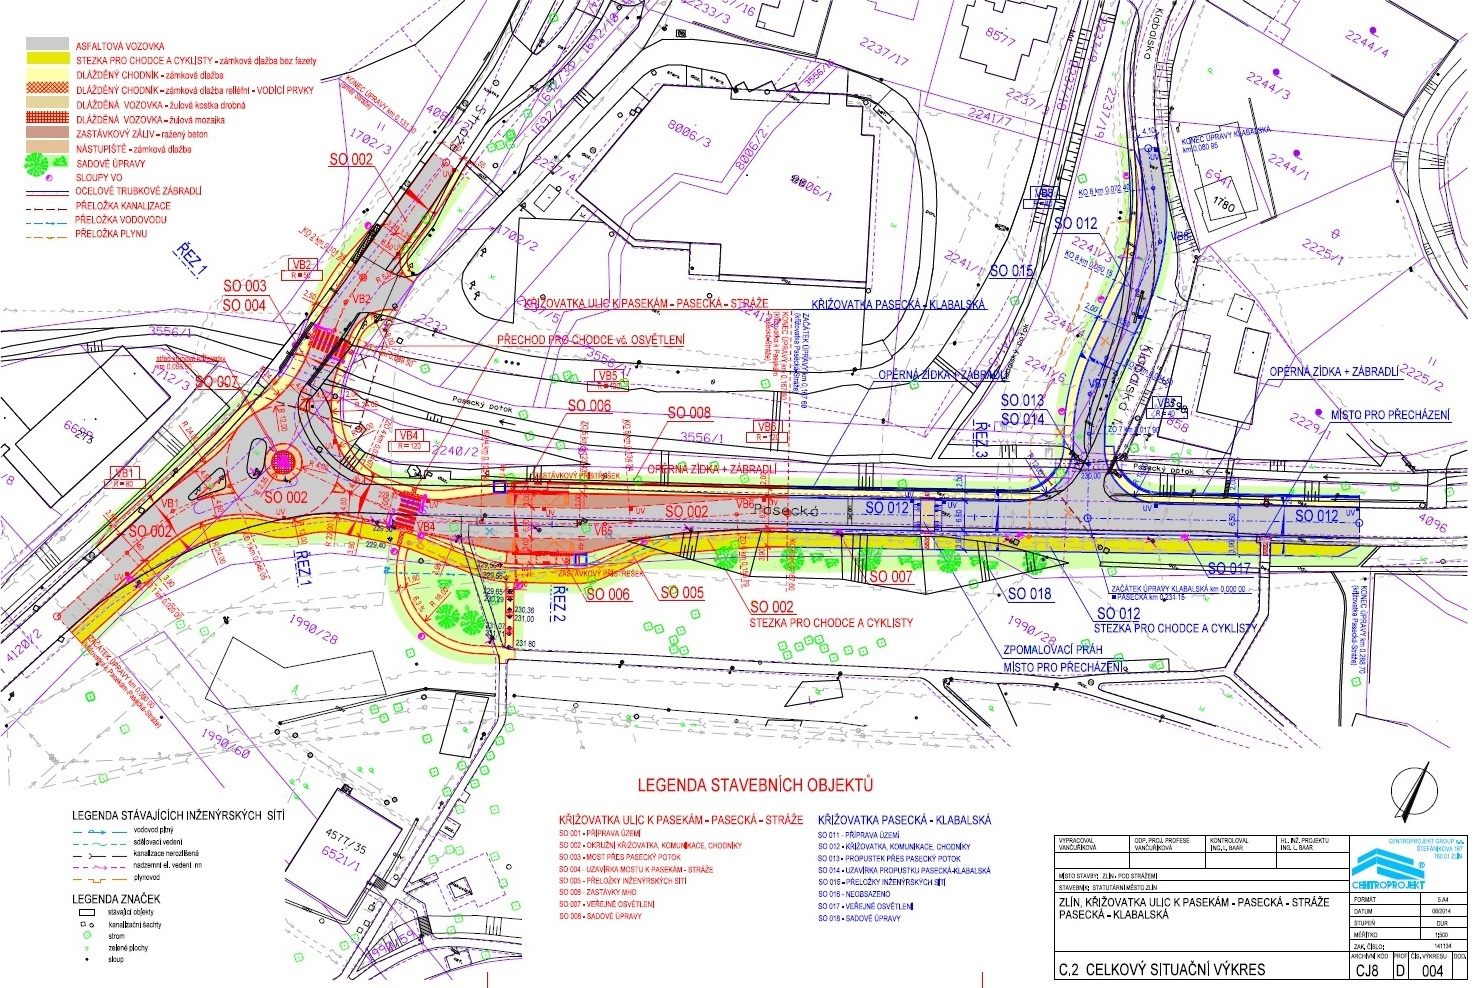 Design Services for the Renovation of the Zlín – Pasecká – Klabalská – Stráže Road Junction